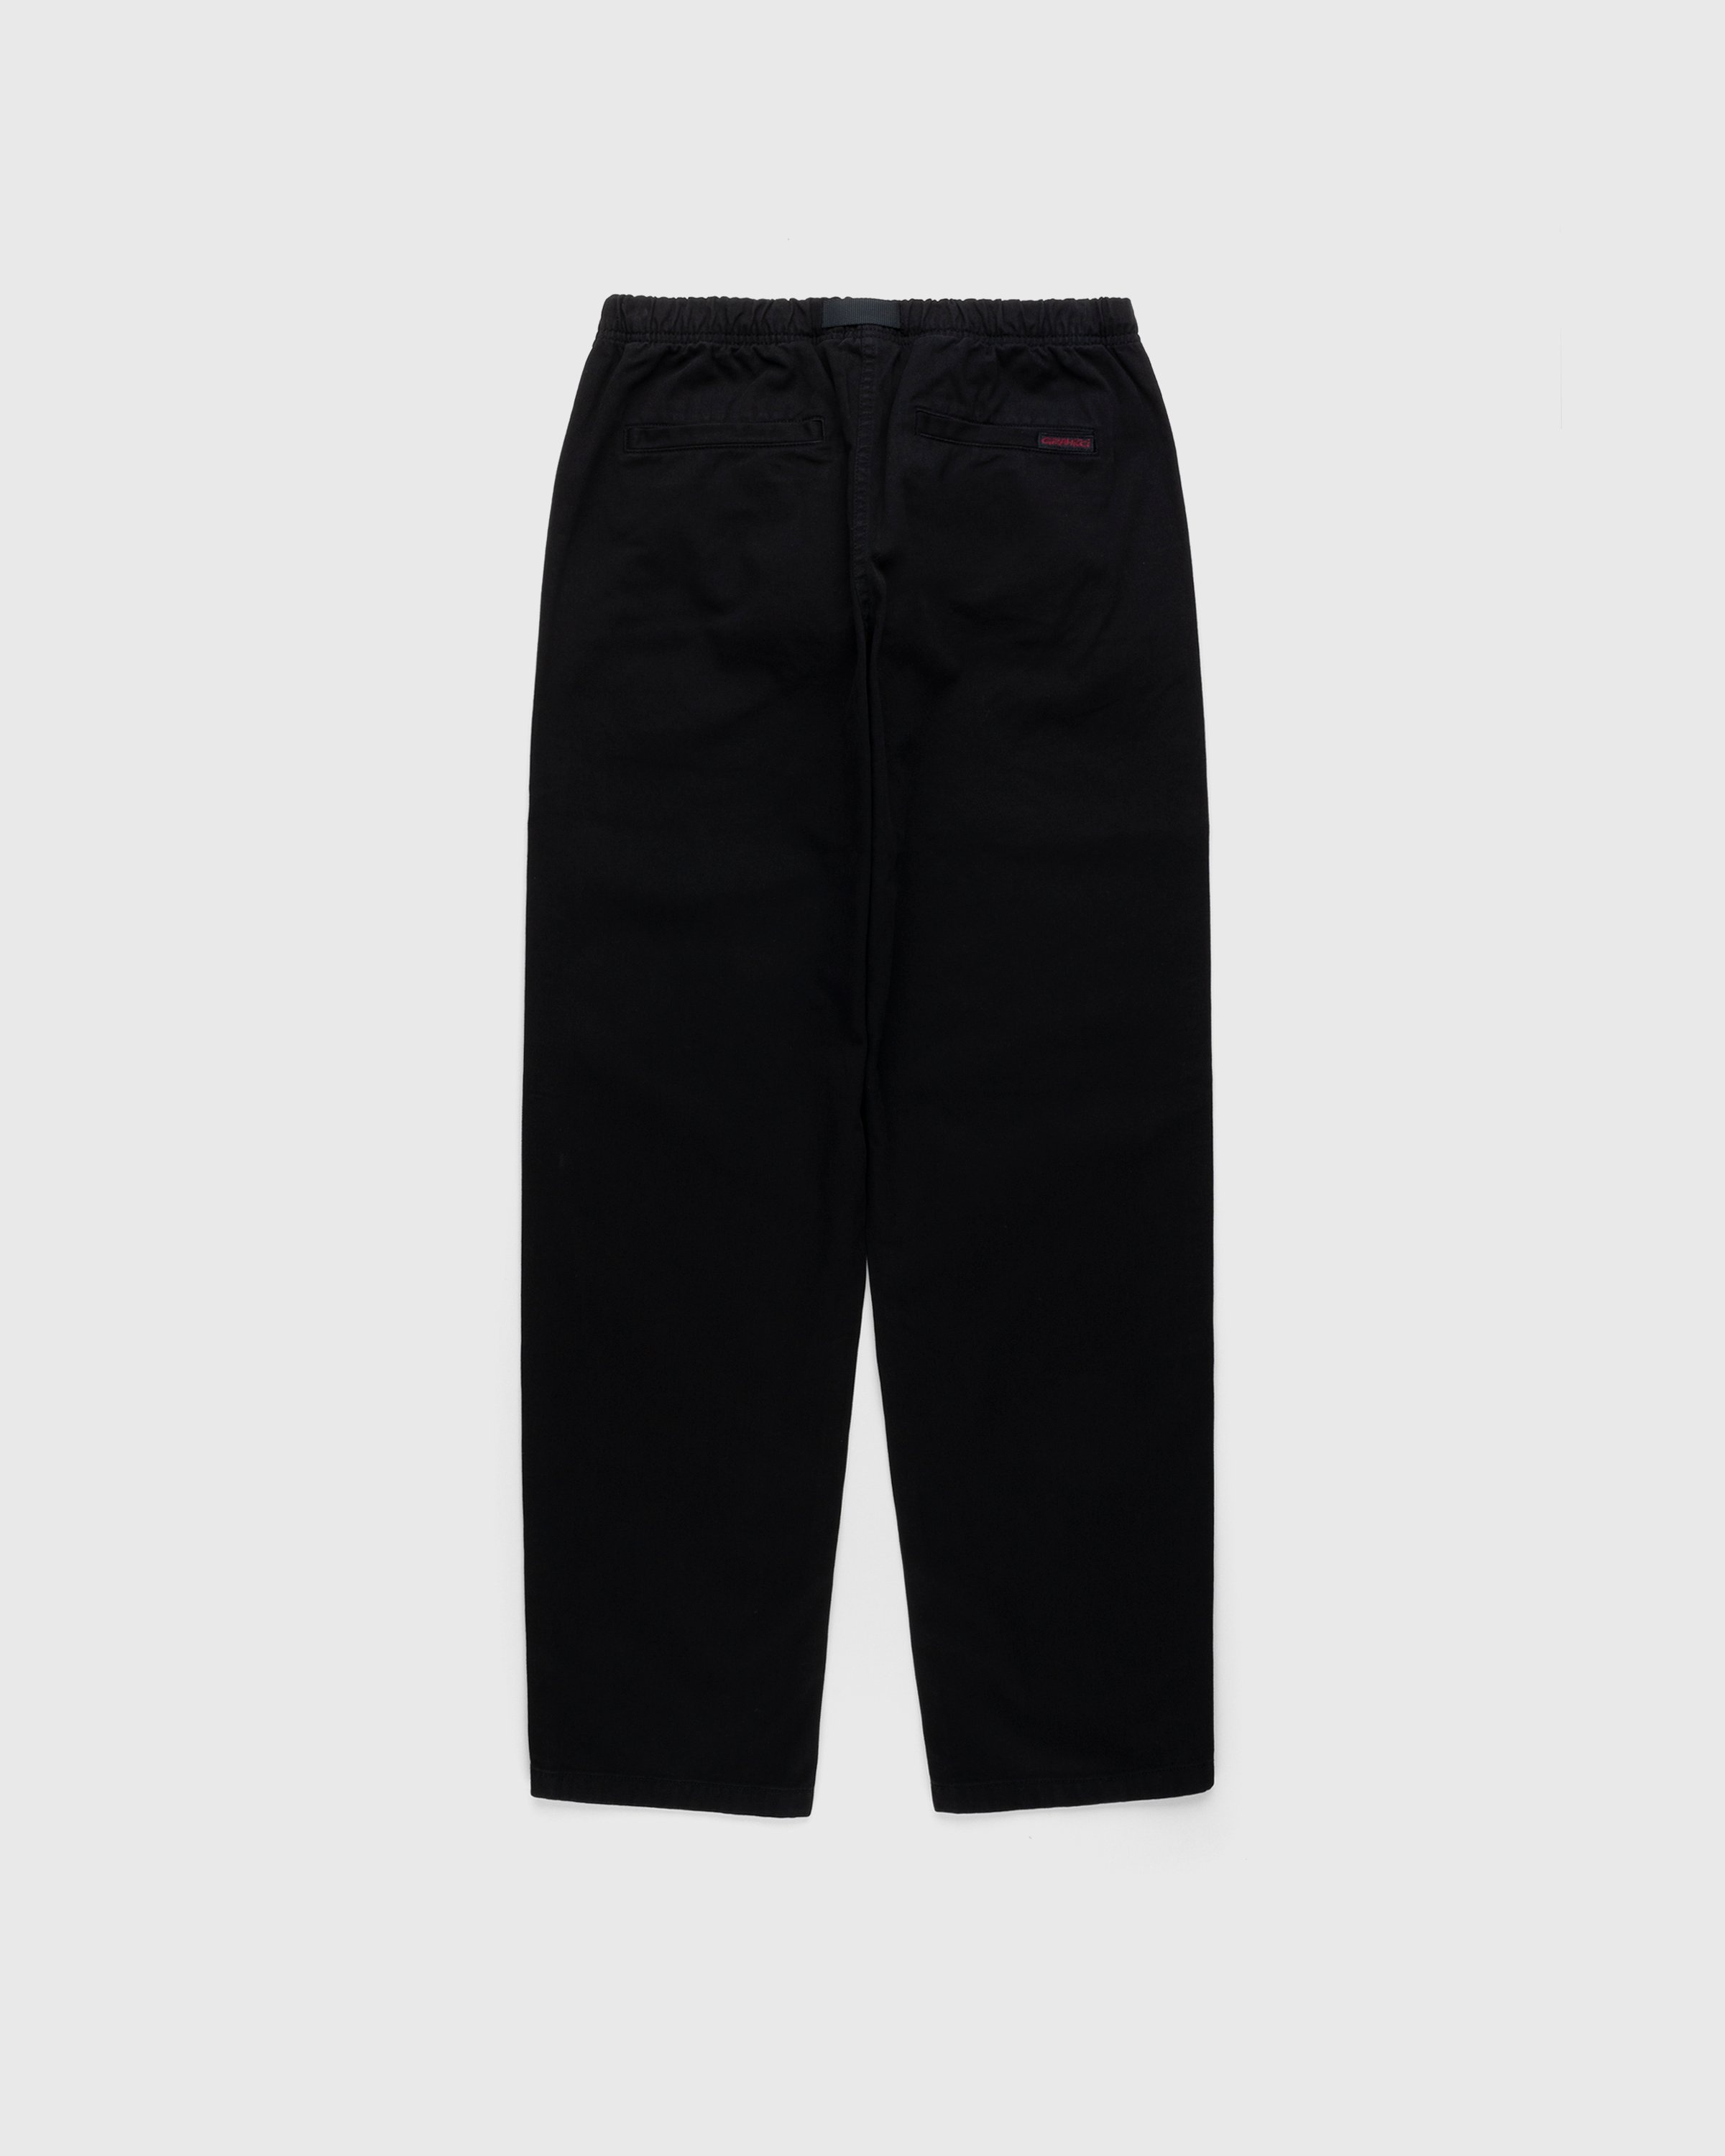 Gramicci – Gramicci Pant Black - Trousers - Black - Image 2